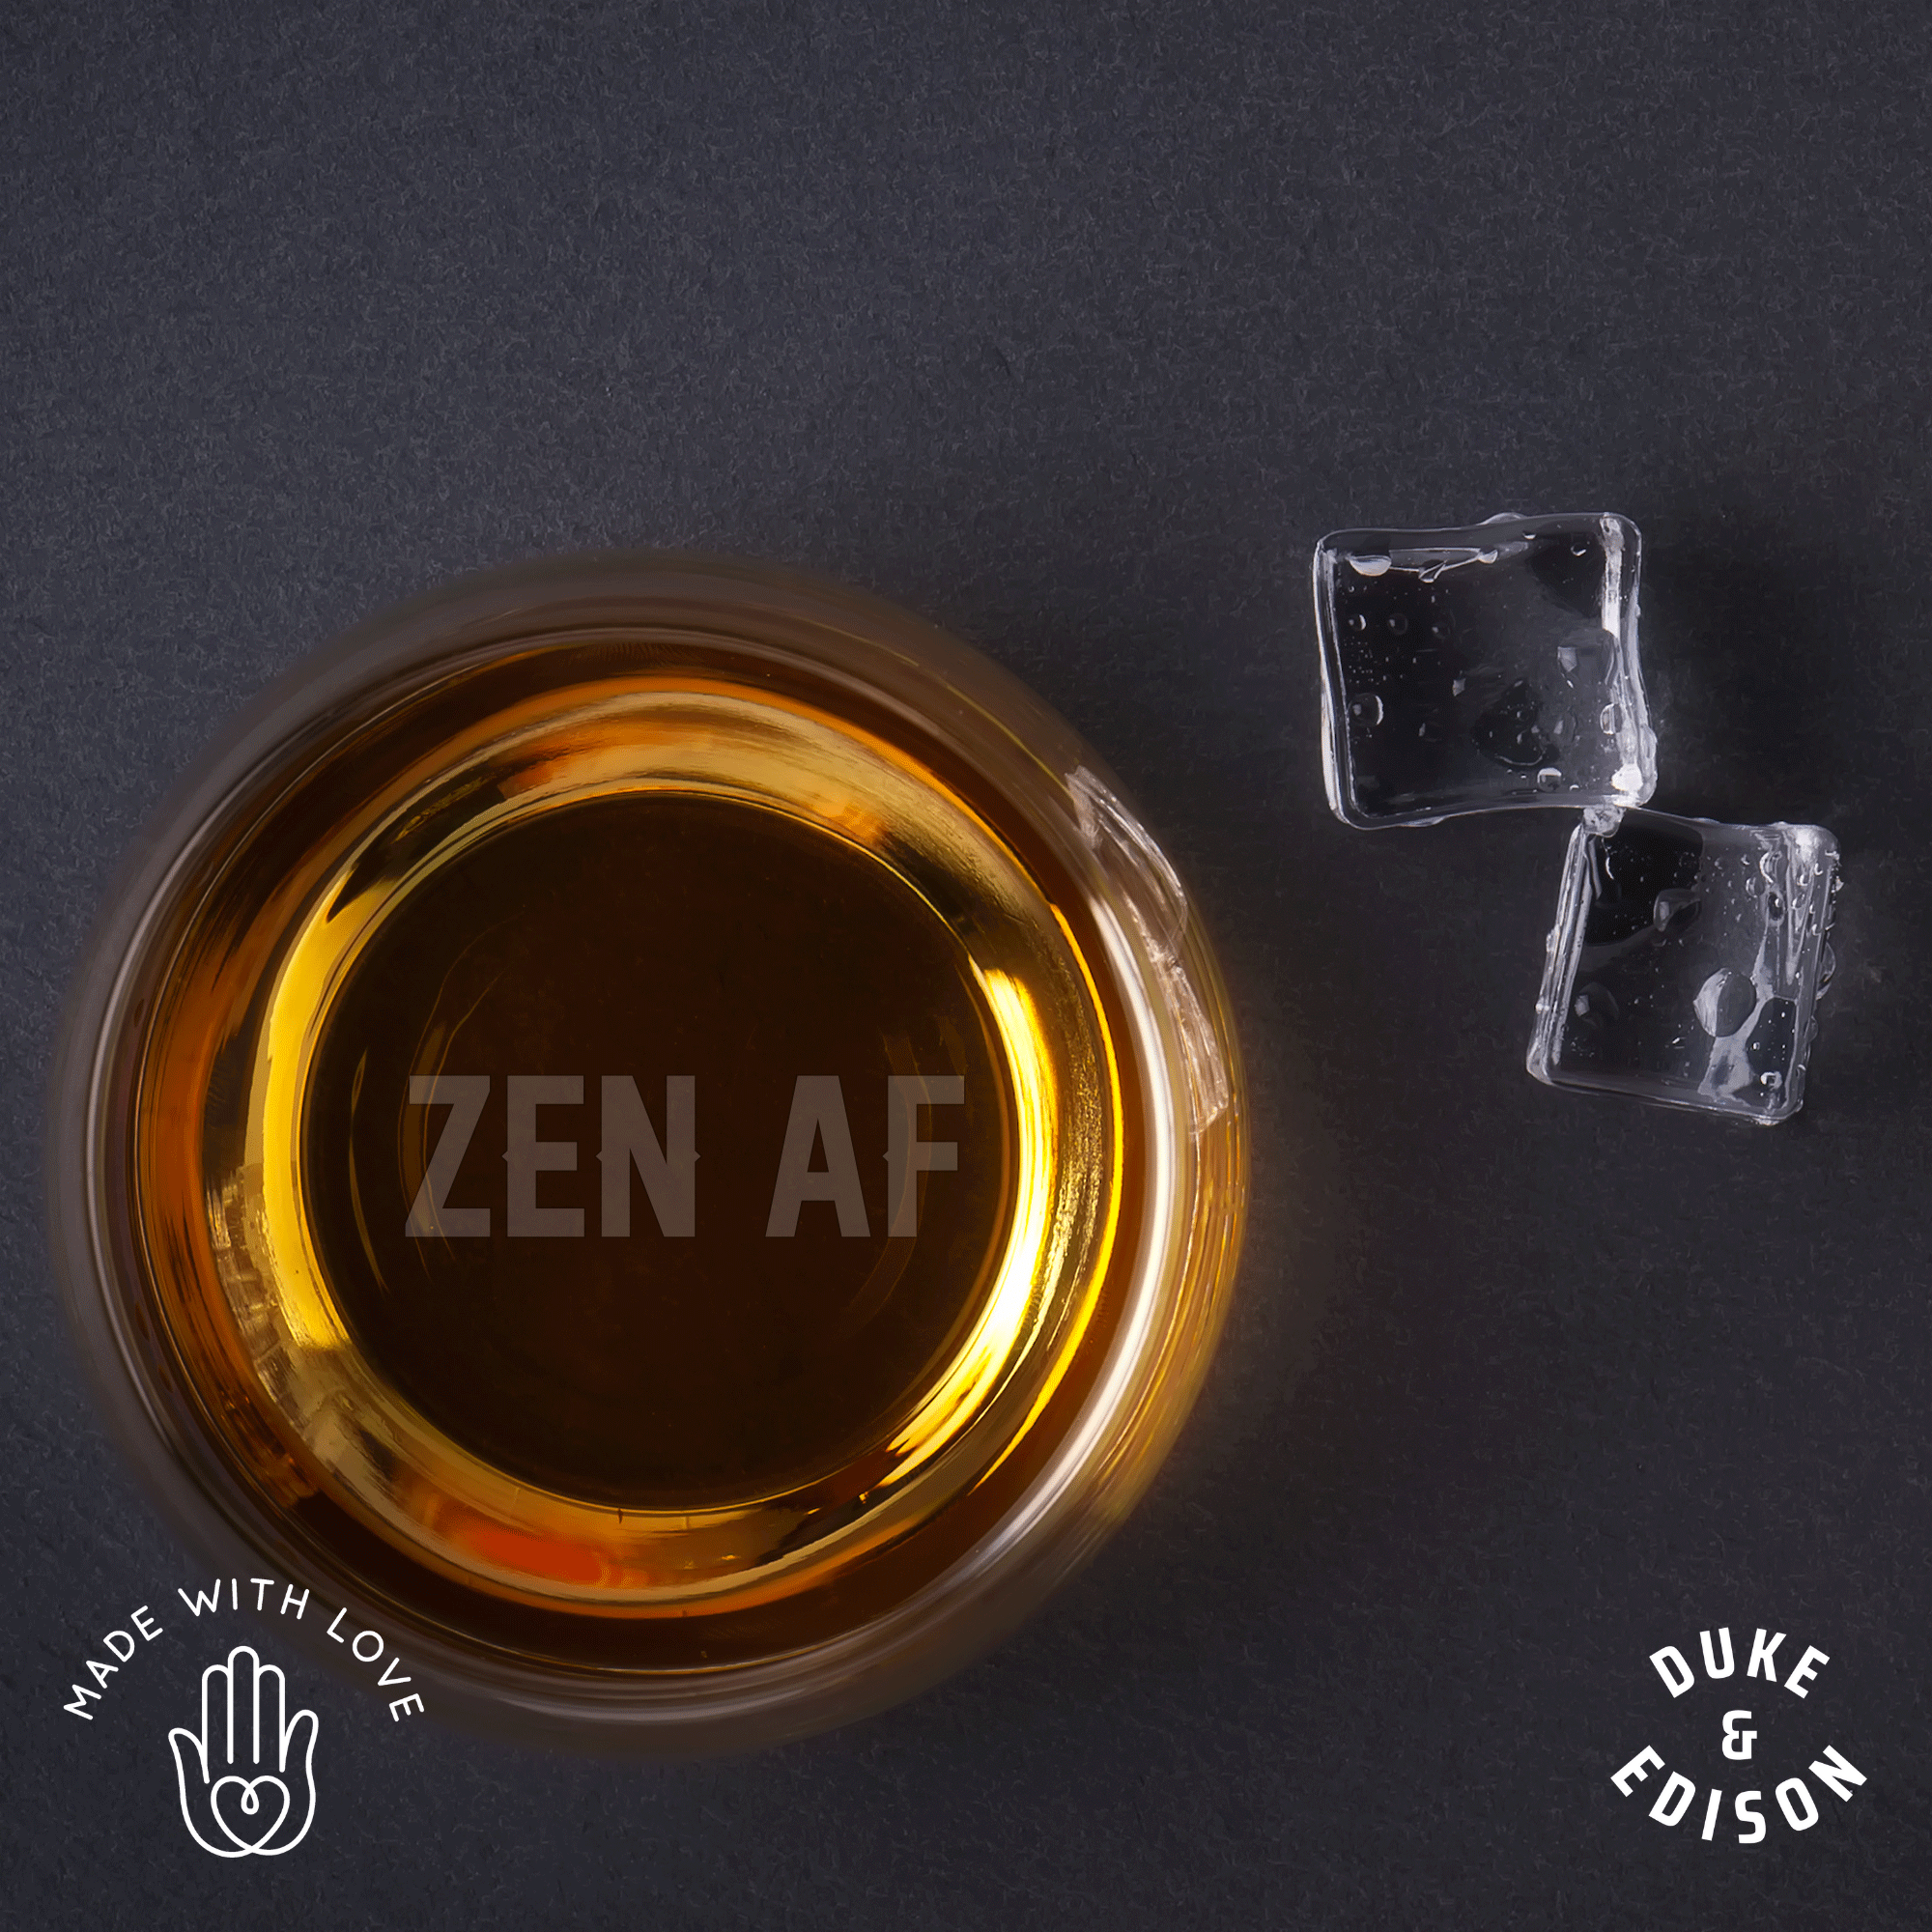 Zen AF - Rocks Glass